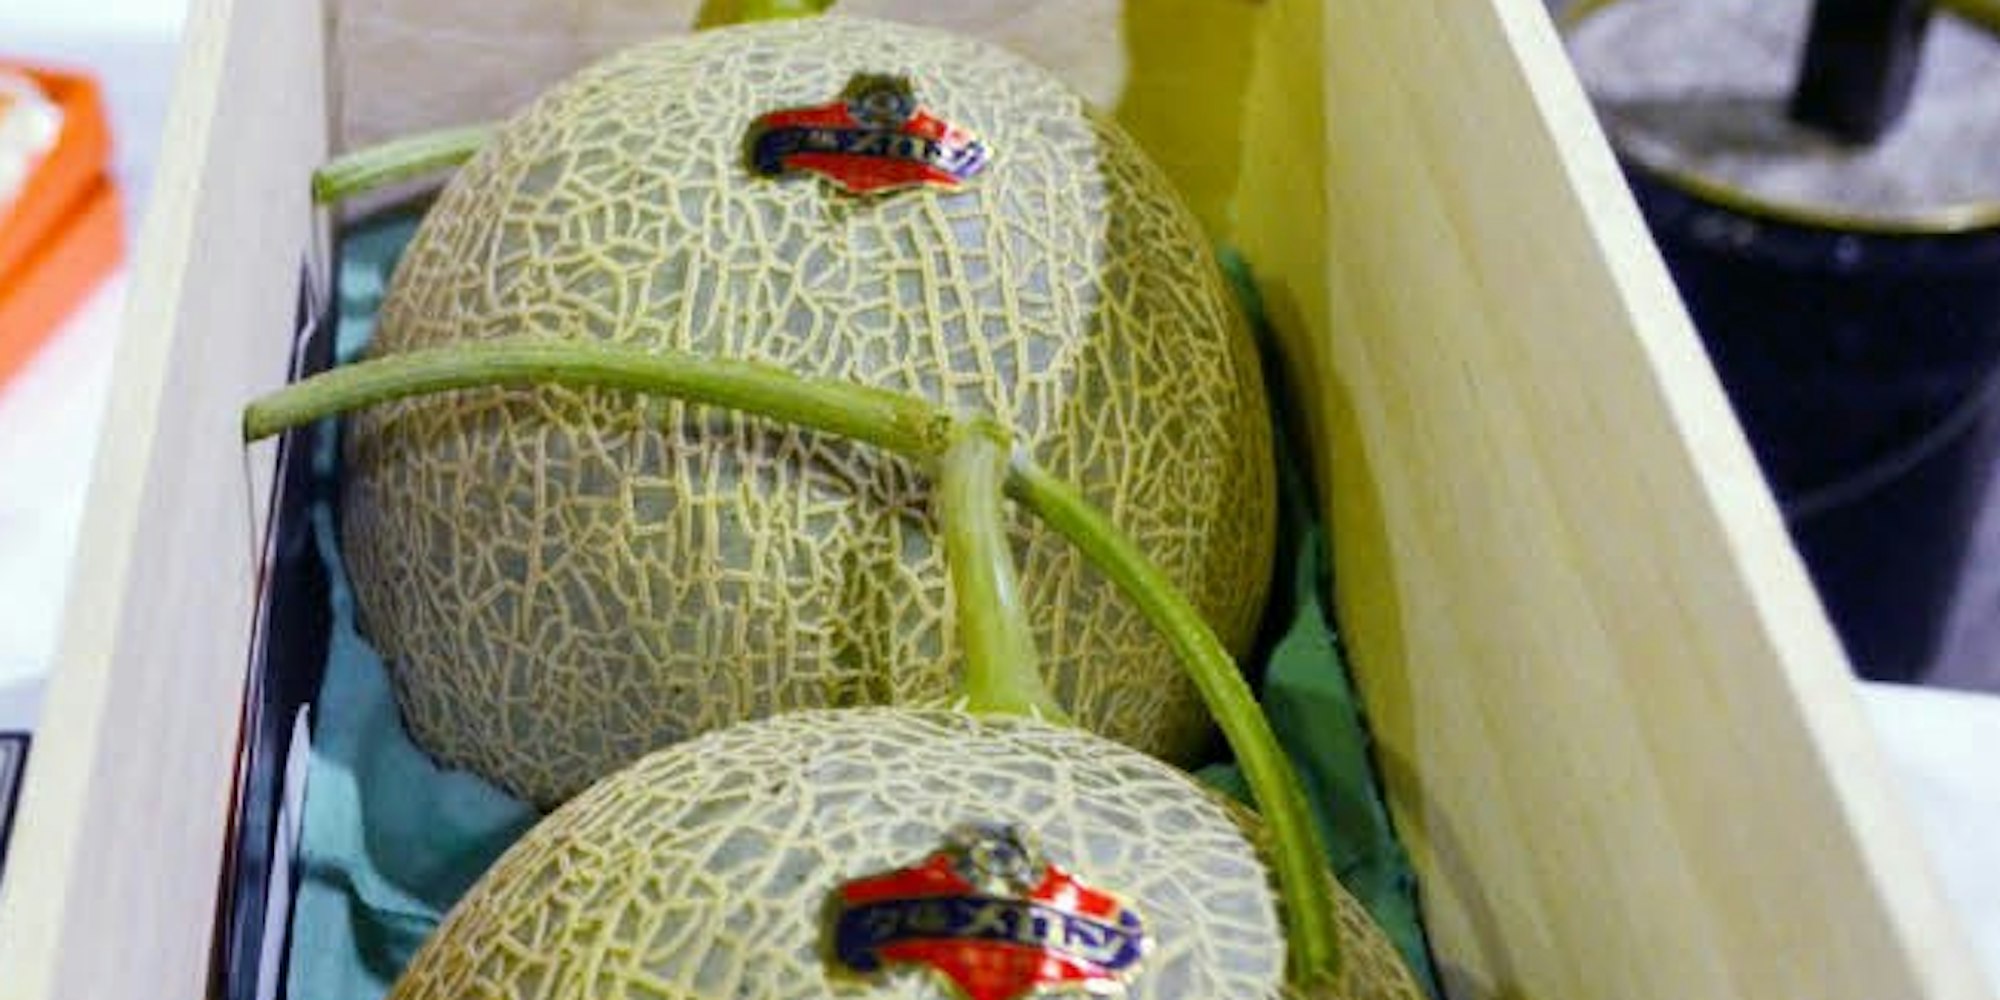 1,5 Millionen Yen, umgerechnet 11 000 Euro, brachte das Melonenpaar bei einer Versteigerung in Sapporo.